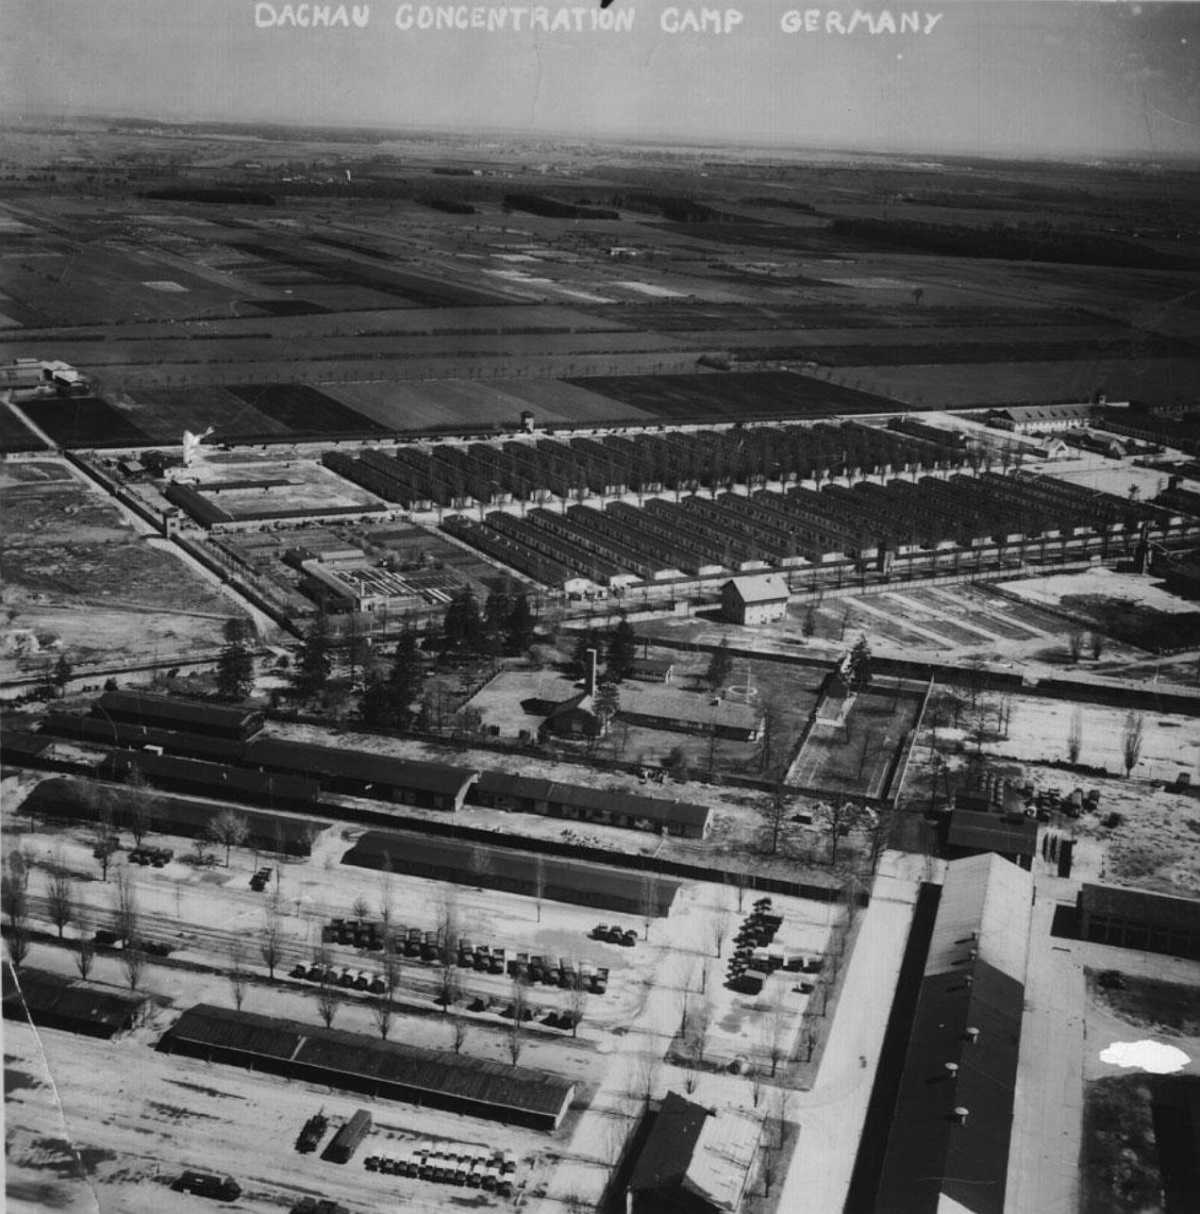 Концлагерь Дахау с высоты птичьего полета. 1945 год. Фото: